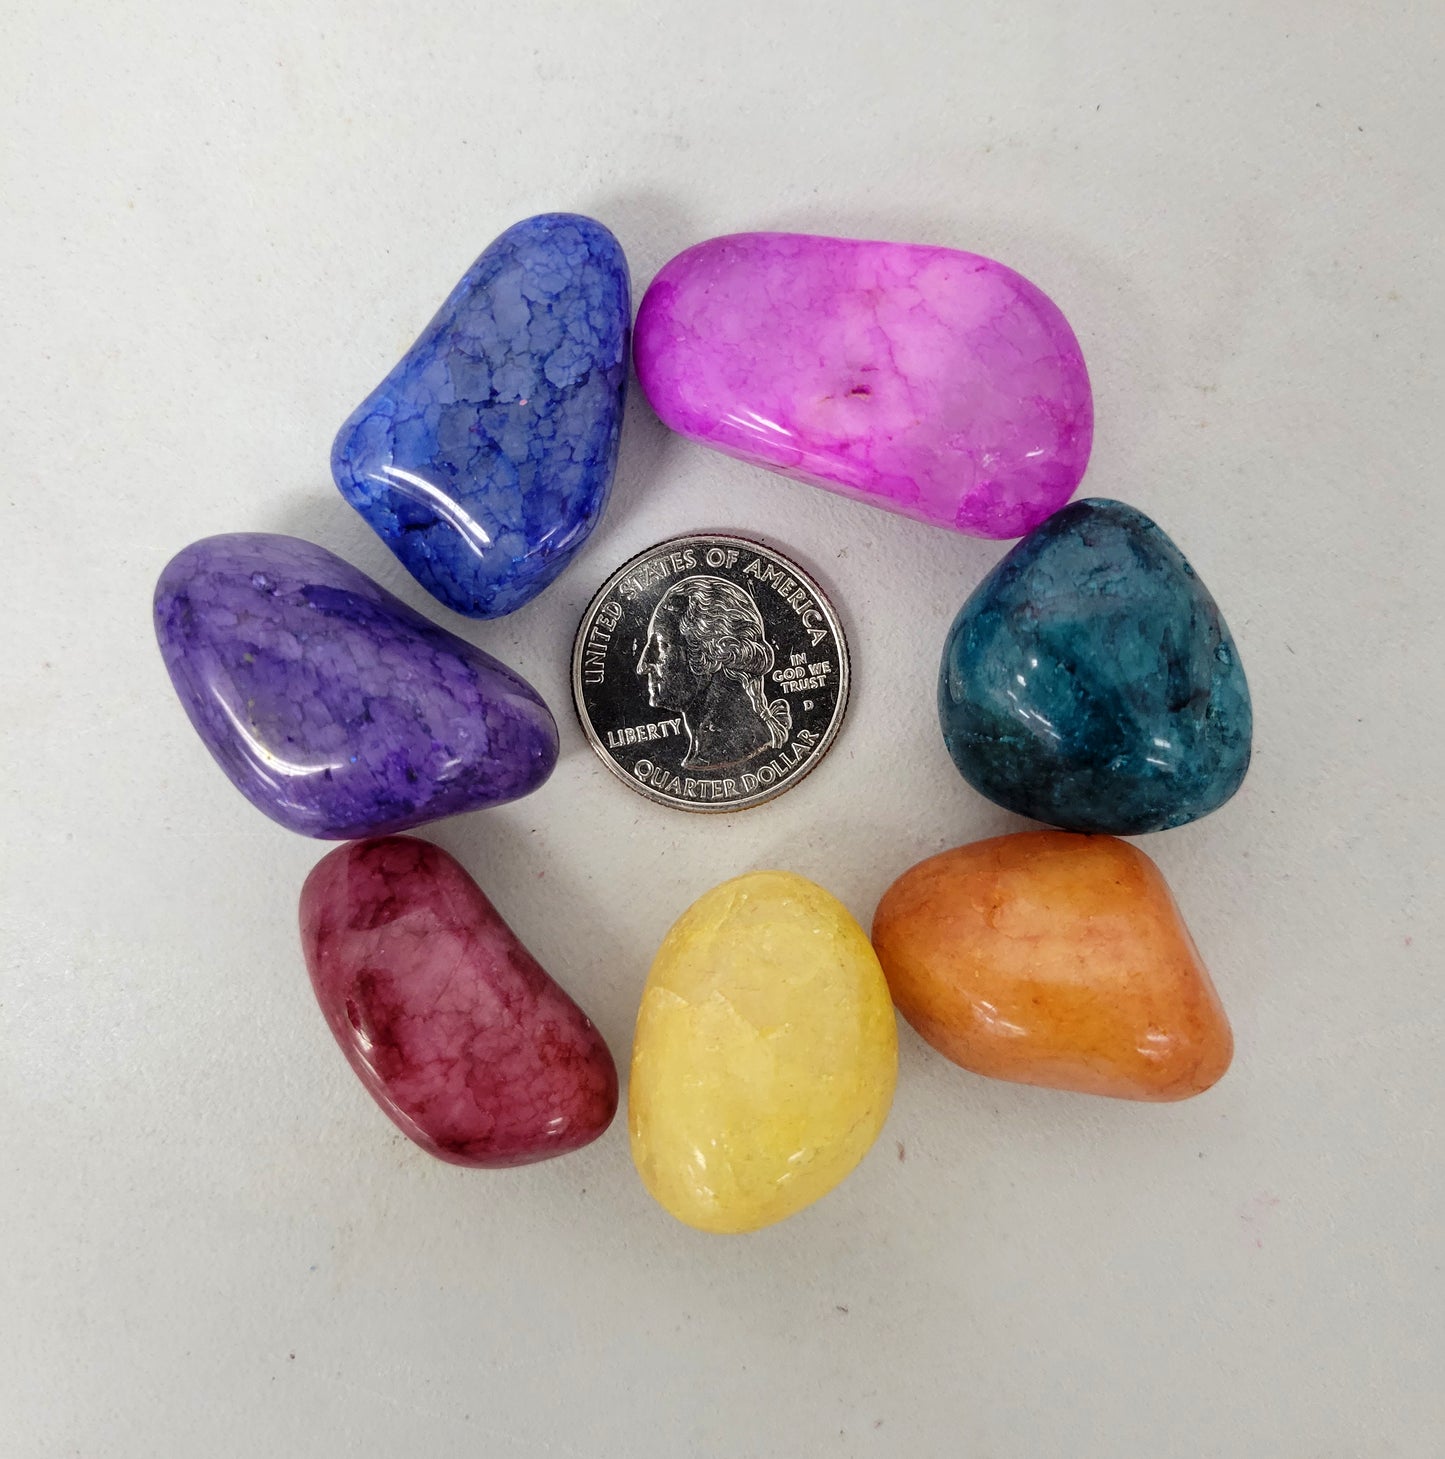 Crackled Quartz Crystals - Mixed Tumbled Stones Bulk